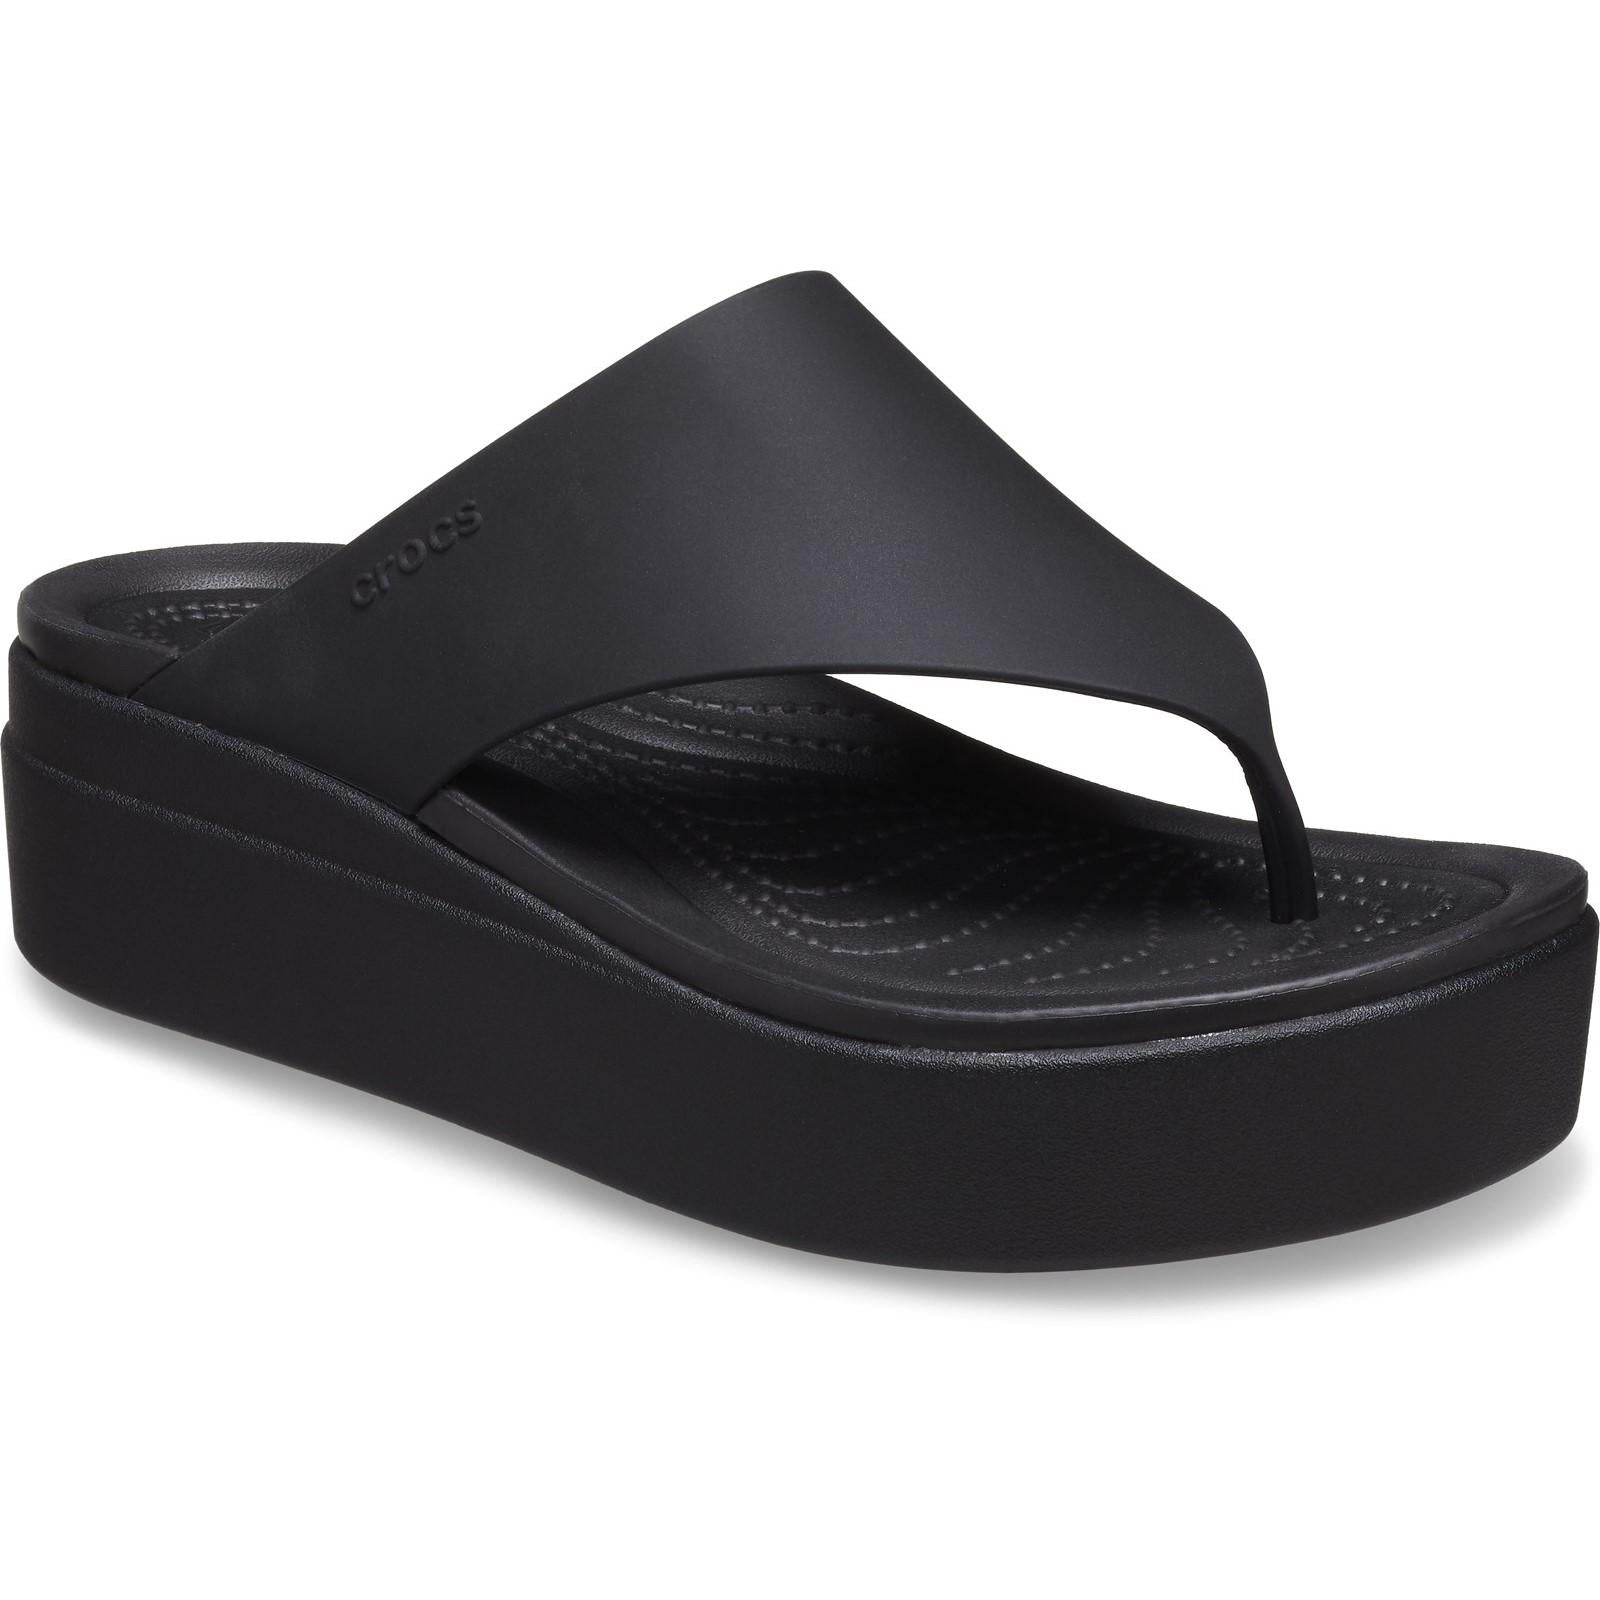 Crocs Brooklyn Flip Sandals